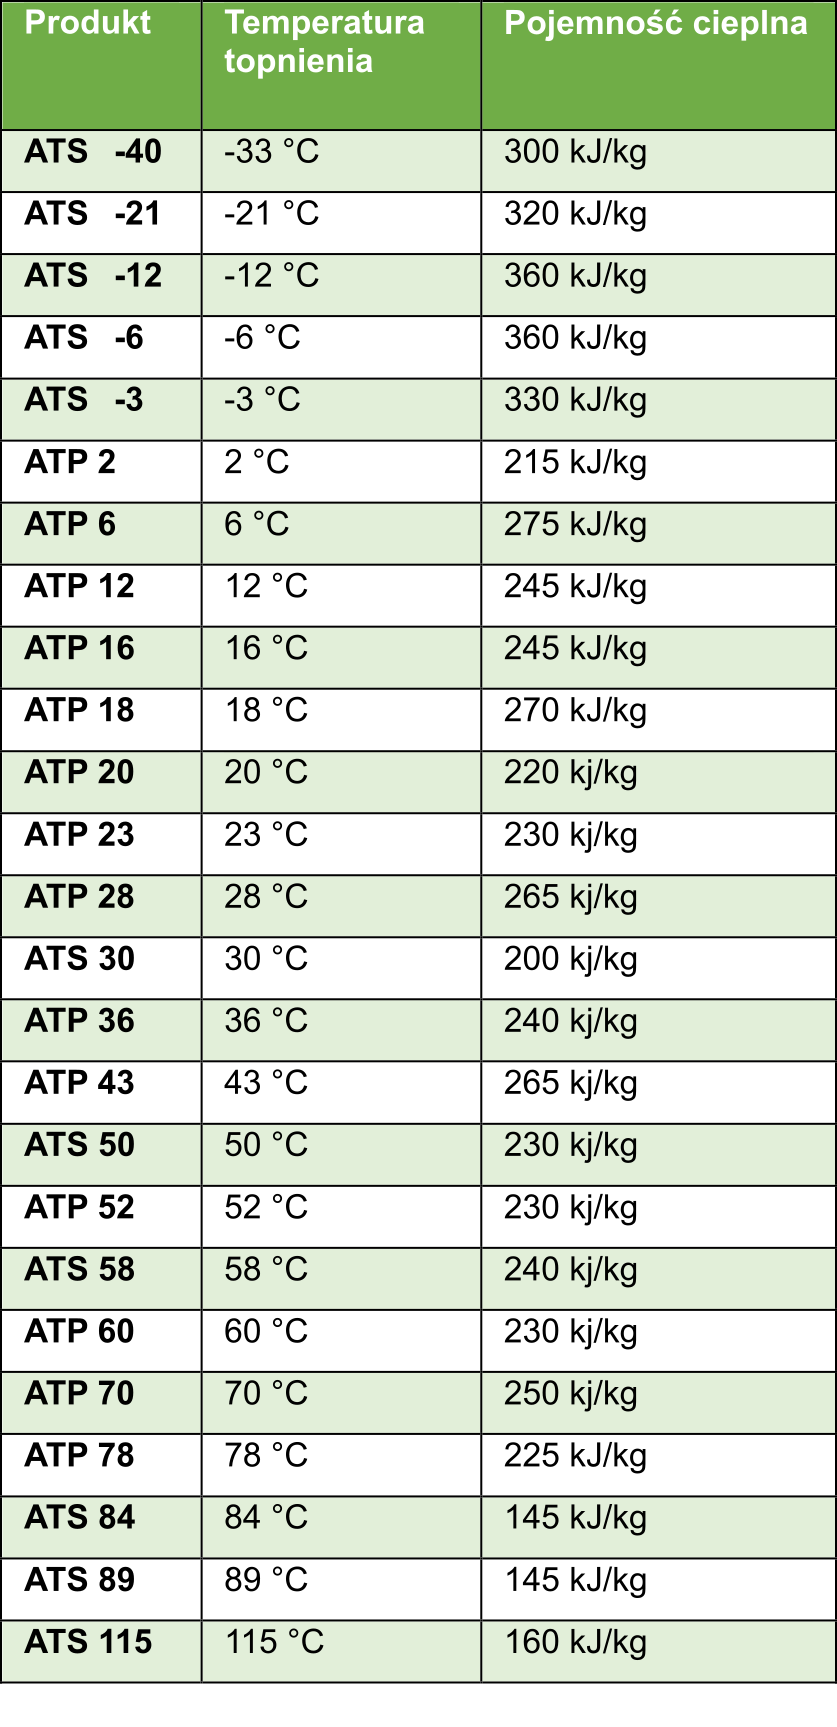 熱と冷却の貯蔵の表 - 相変化温度の範囲